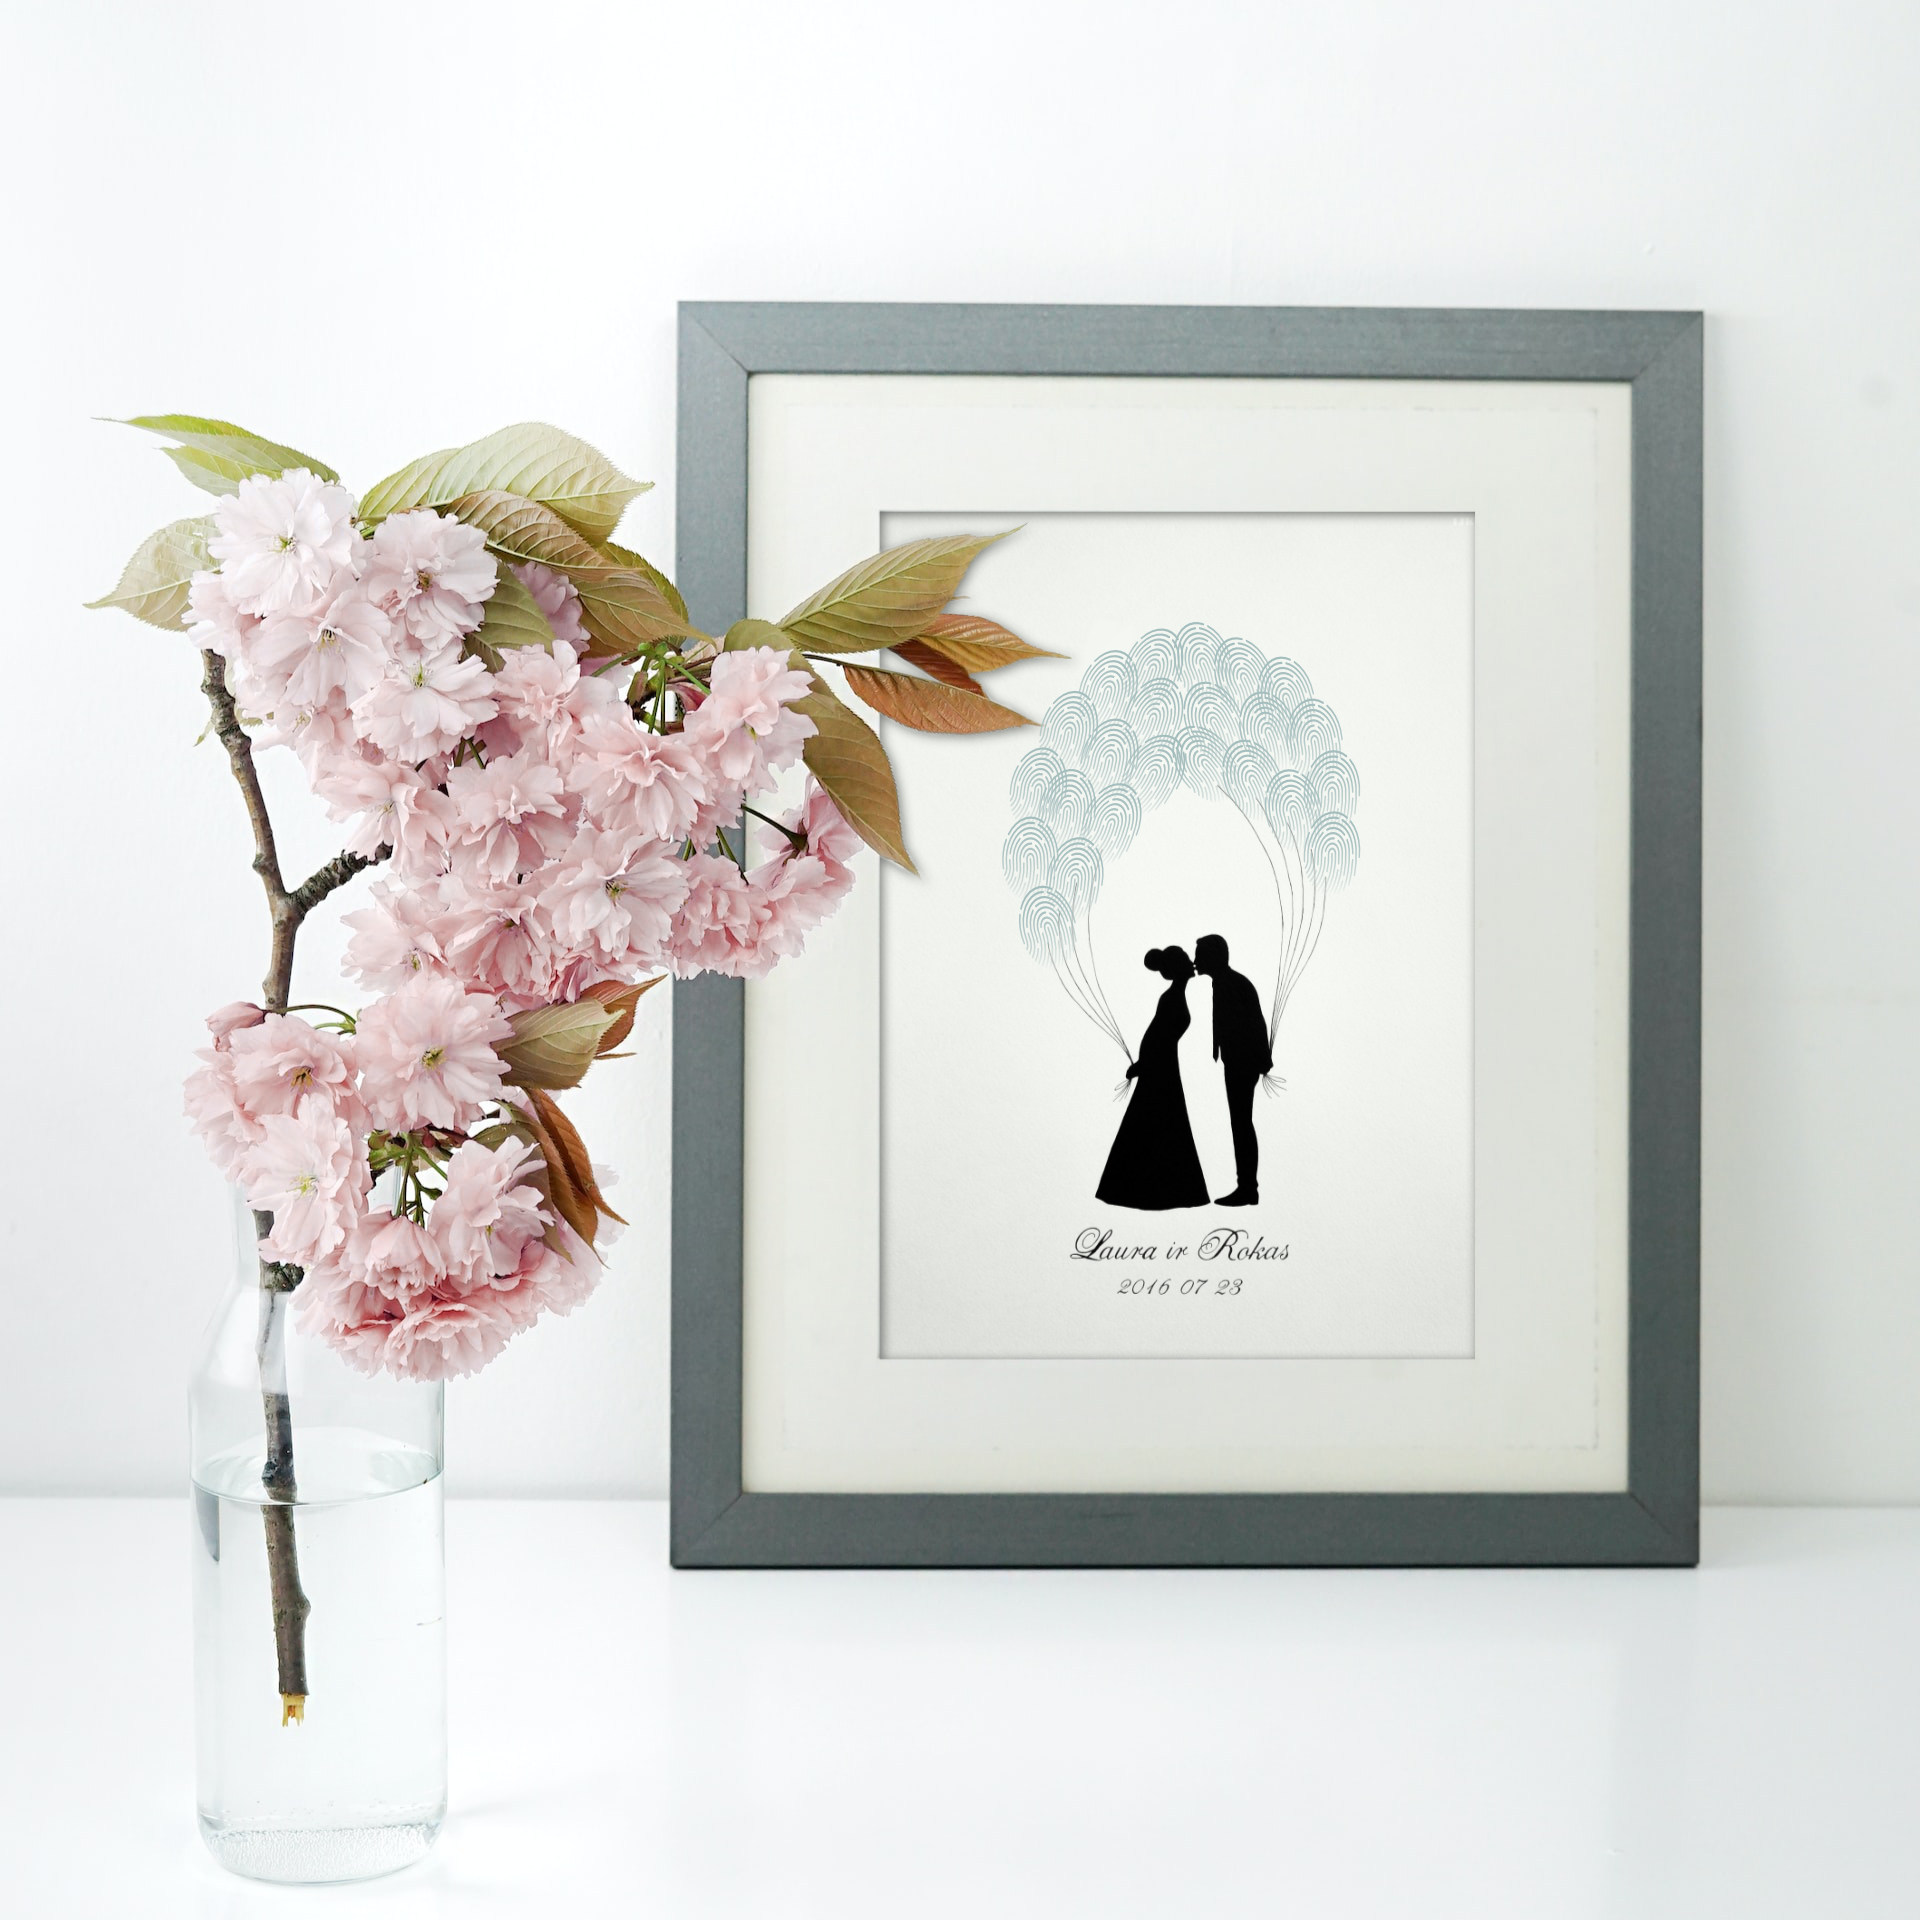 Vestuvinis paveikslas, vestuvių svečių pirštų antspaudams, besibučiuojanti pora su balionais, bučinys